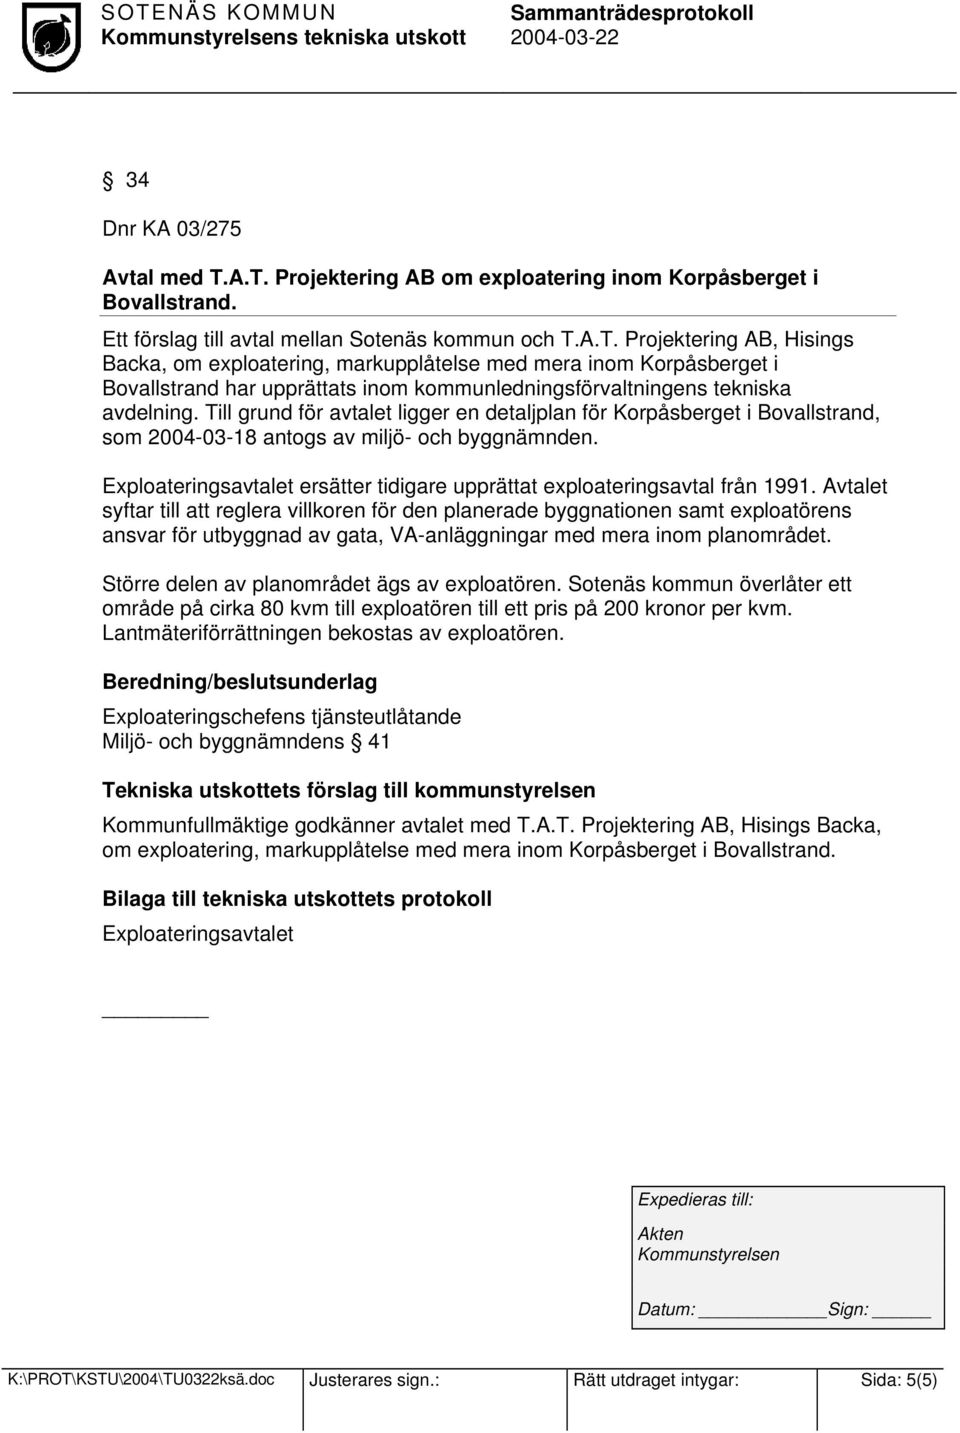 Till grund för avtalet ligger en detaljplan för Korpåsberget i Bovallstrand, som 2004-03-18 antogs av miljö- och byggnämnden.